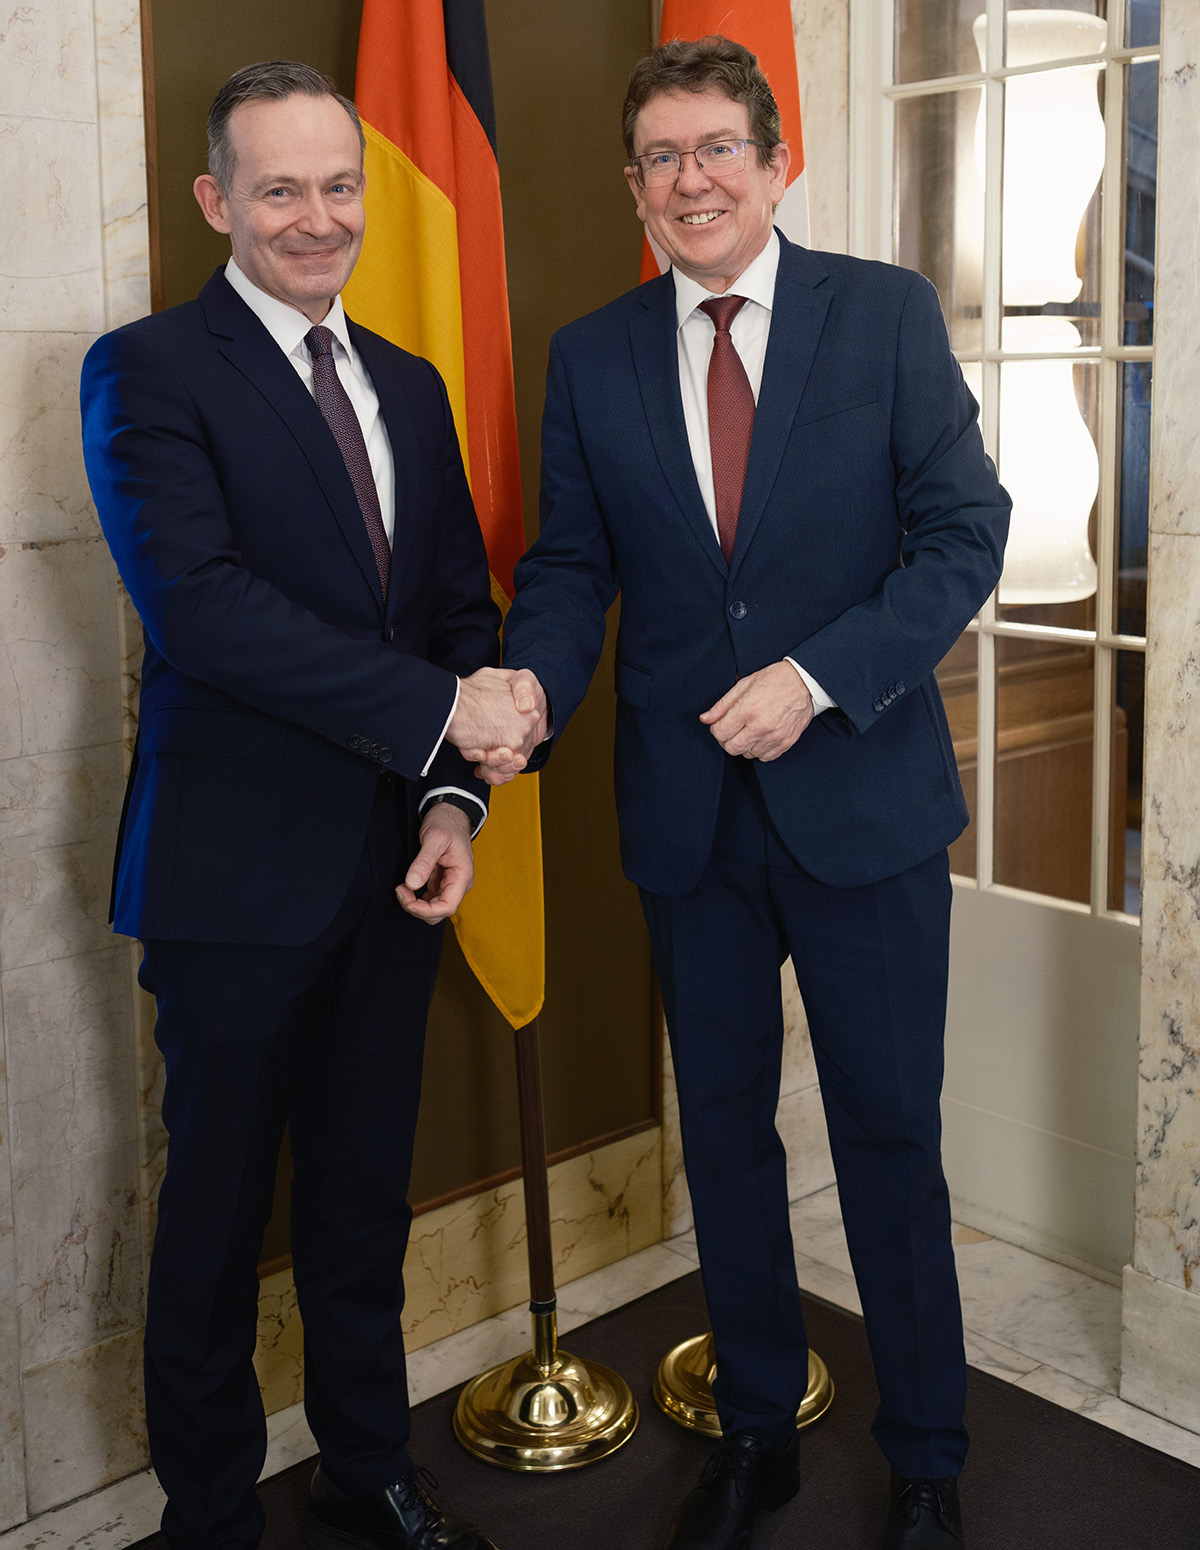 Verkehrsminister Albert Rösti tauscht sich mit dem deutschen Bundesminister für Digitales und Verkehr, Volker Wissing, aus.